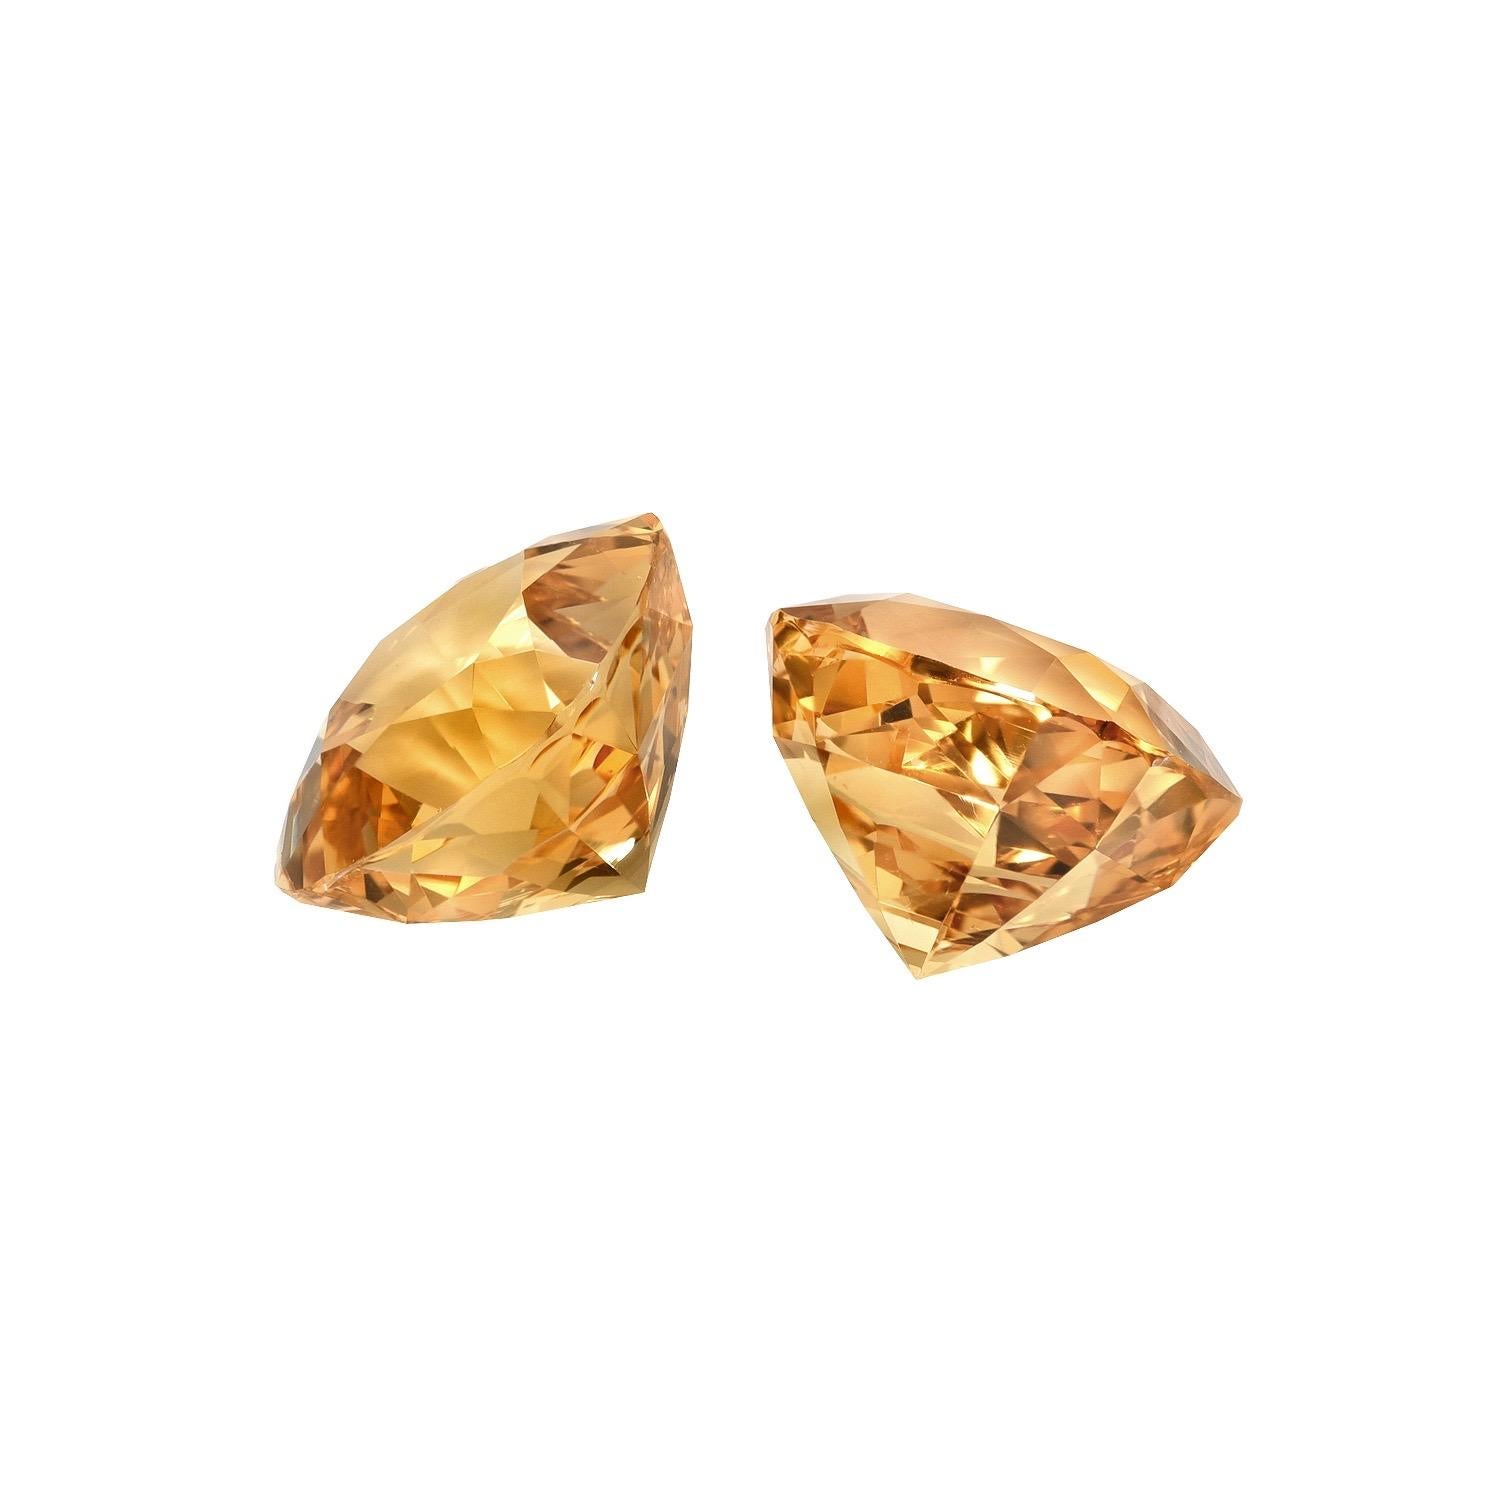 Golden pair of 8.81 carats total, 